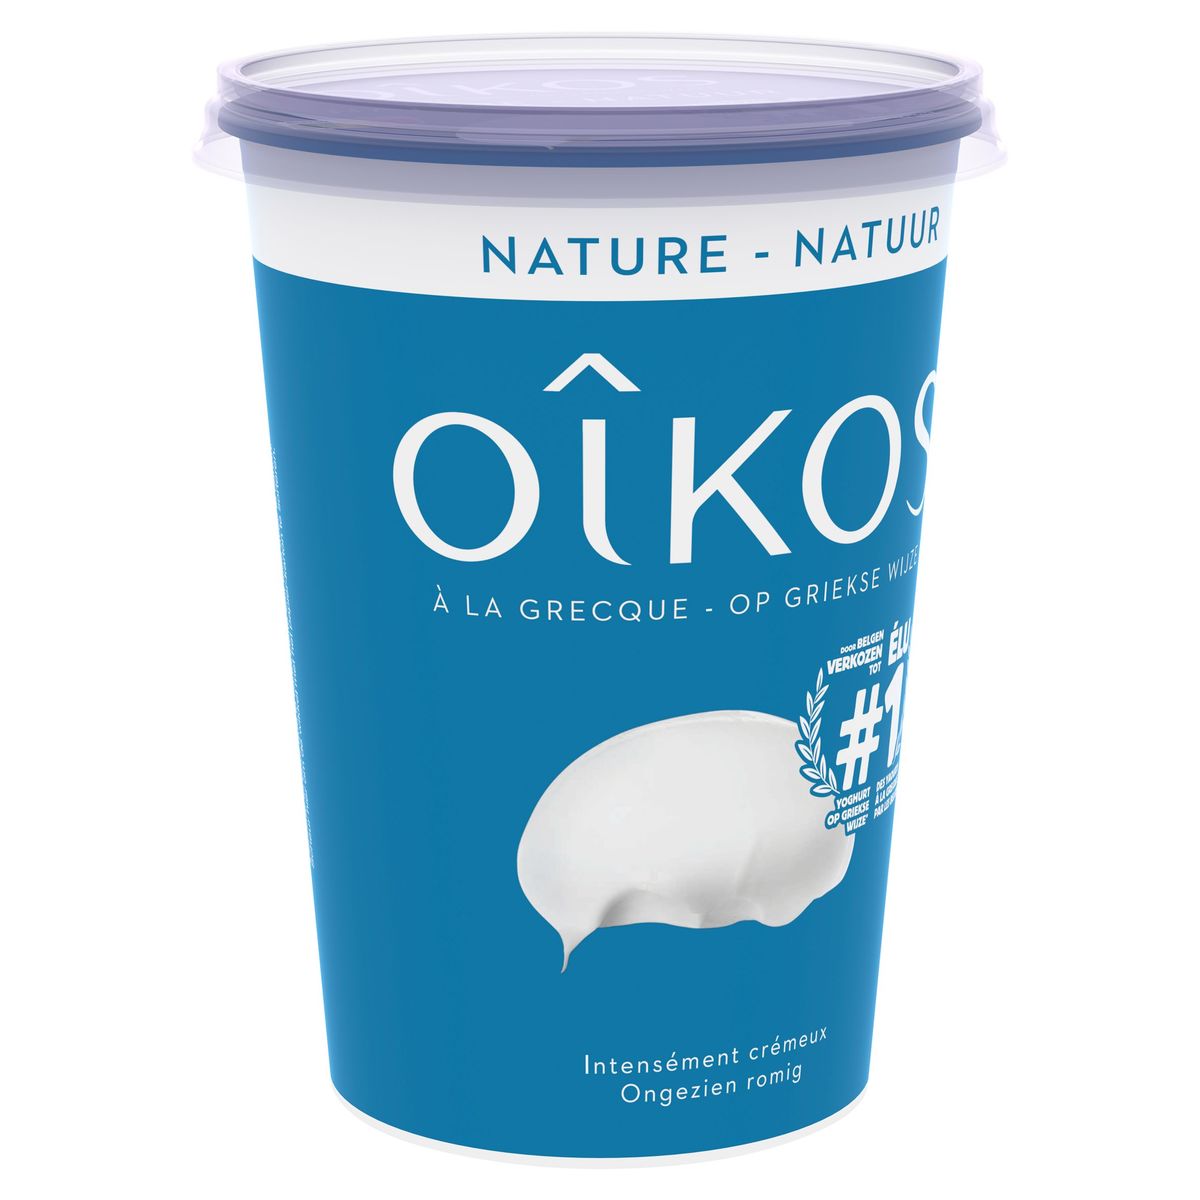 Oikos Yoghurt op Griekse Wijze Natuur 480 g